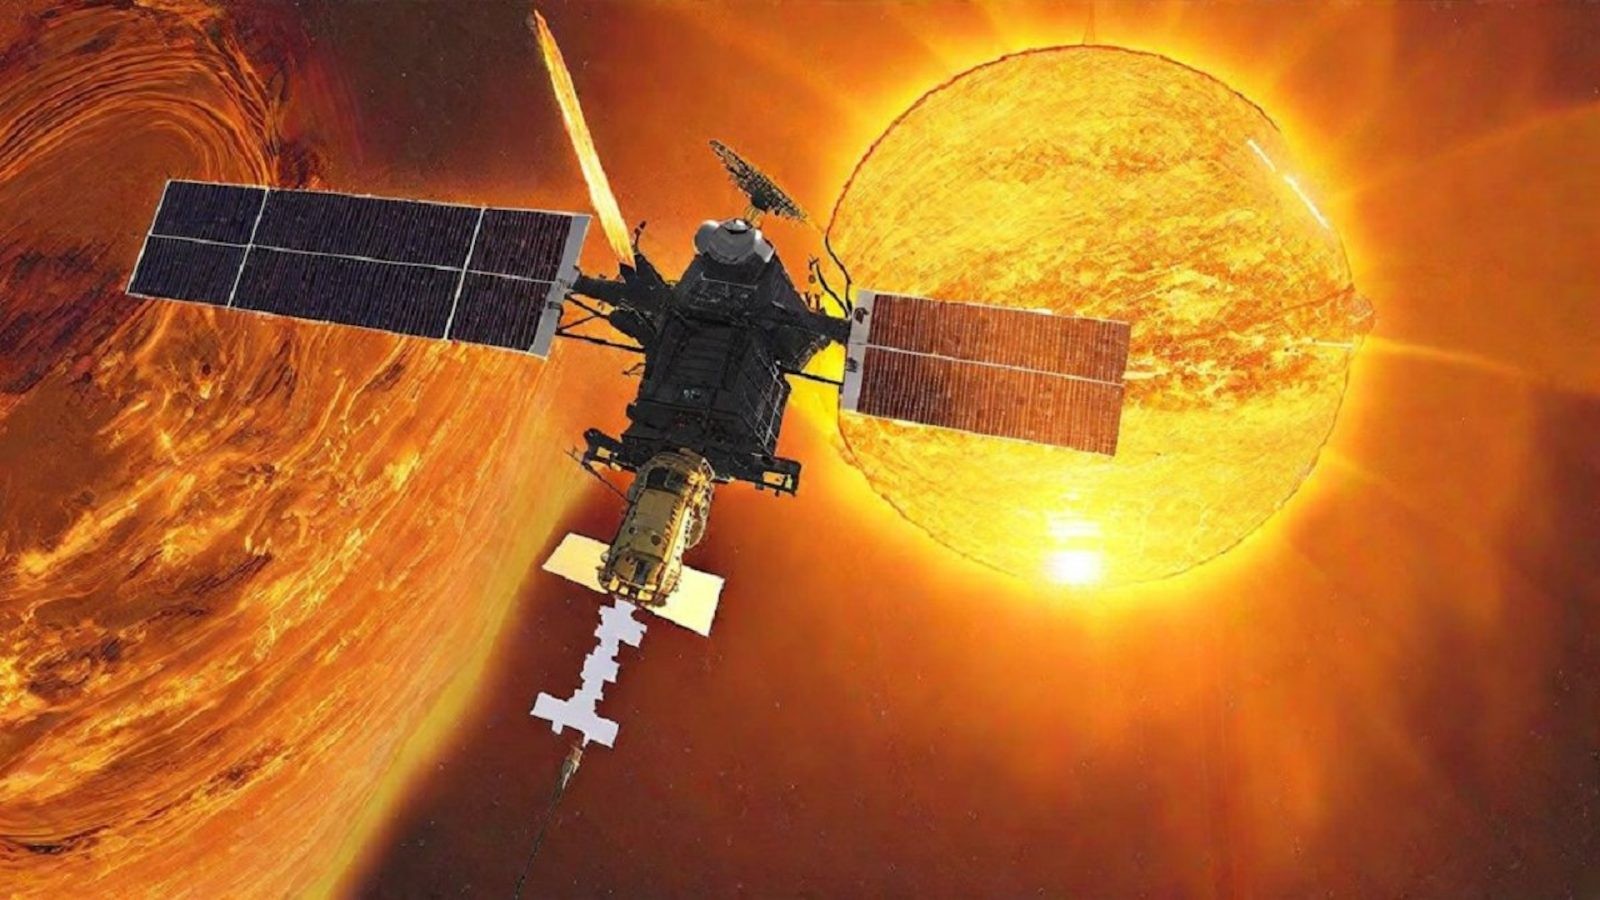 Indyjska sonda zrobiła zachwycające zdjęcie Ziemi z kosmosu. Wkrótce odleci w stronę Słońca